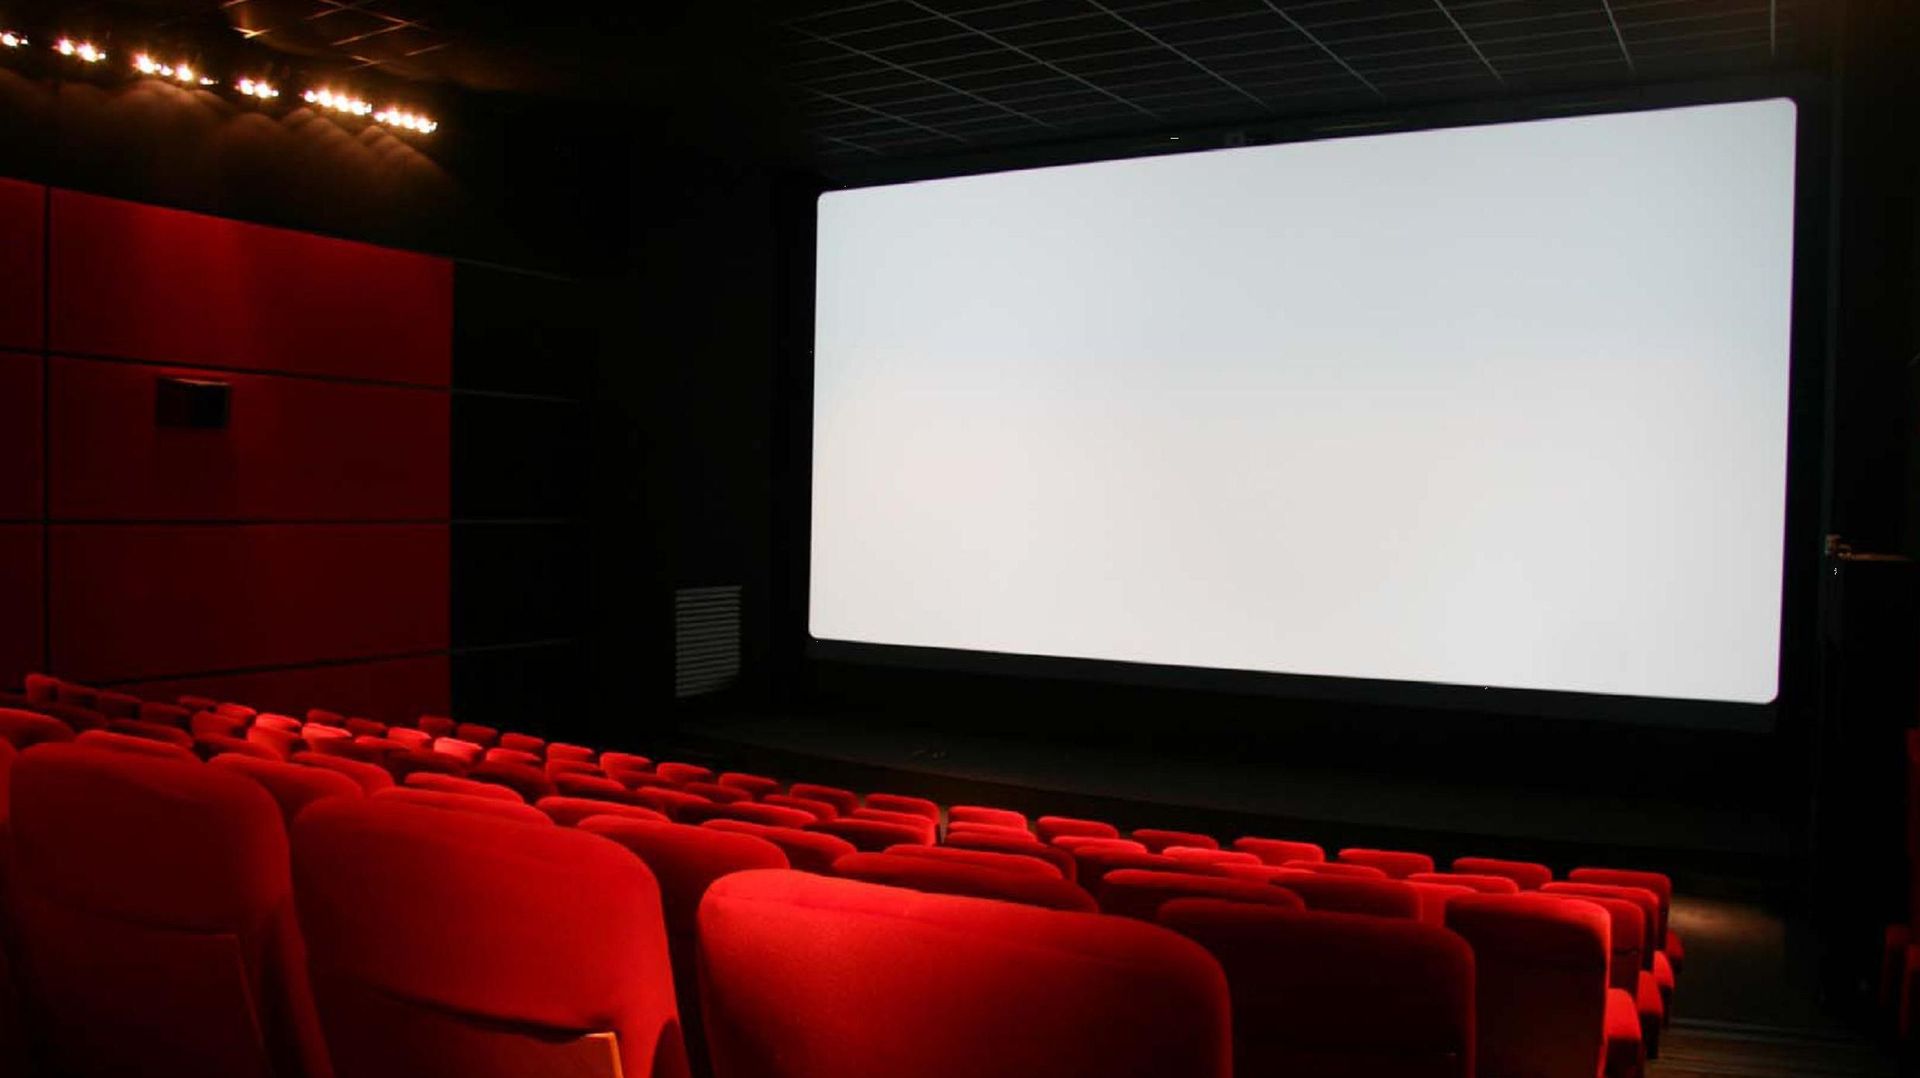 Philips souhaite contrer le piratage dans les salles de cinéma à l'aide d'ampoules